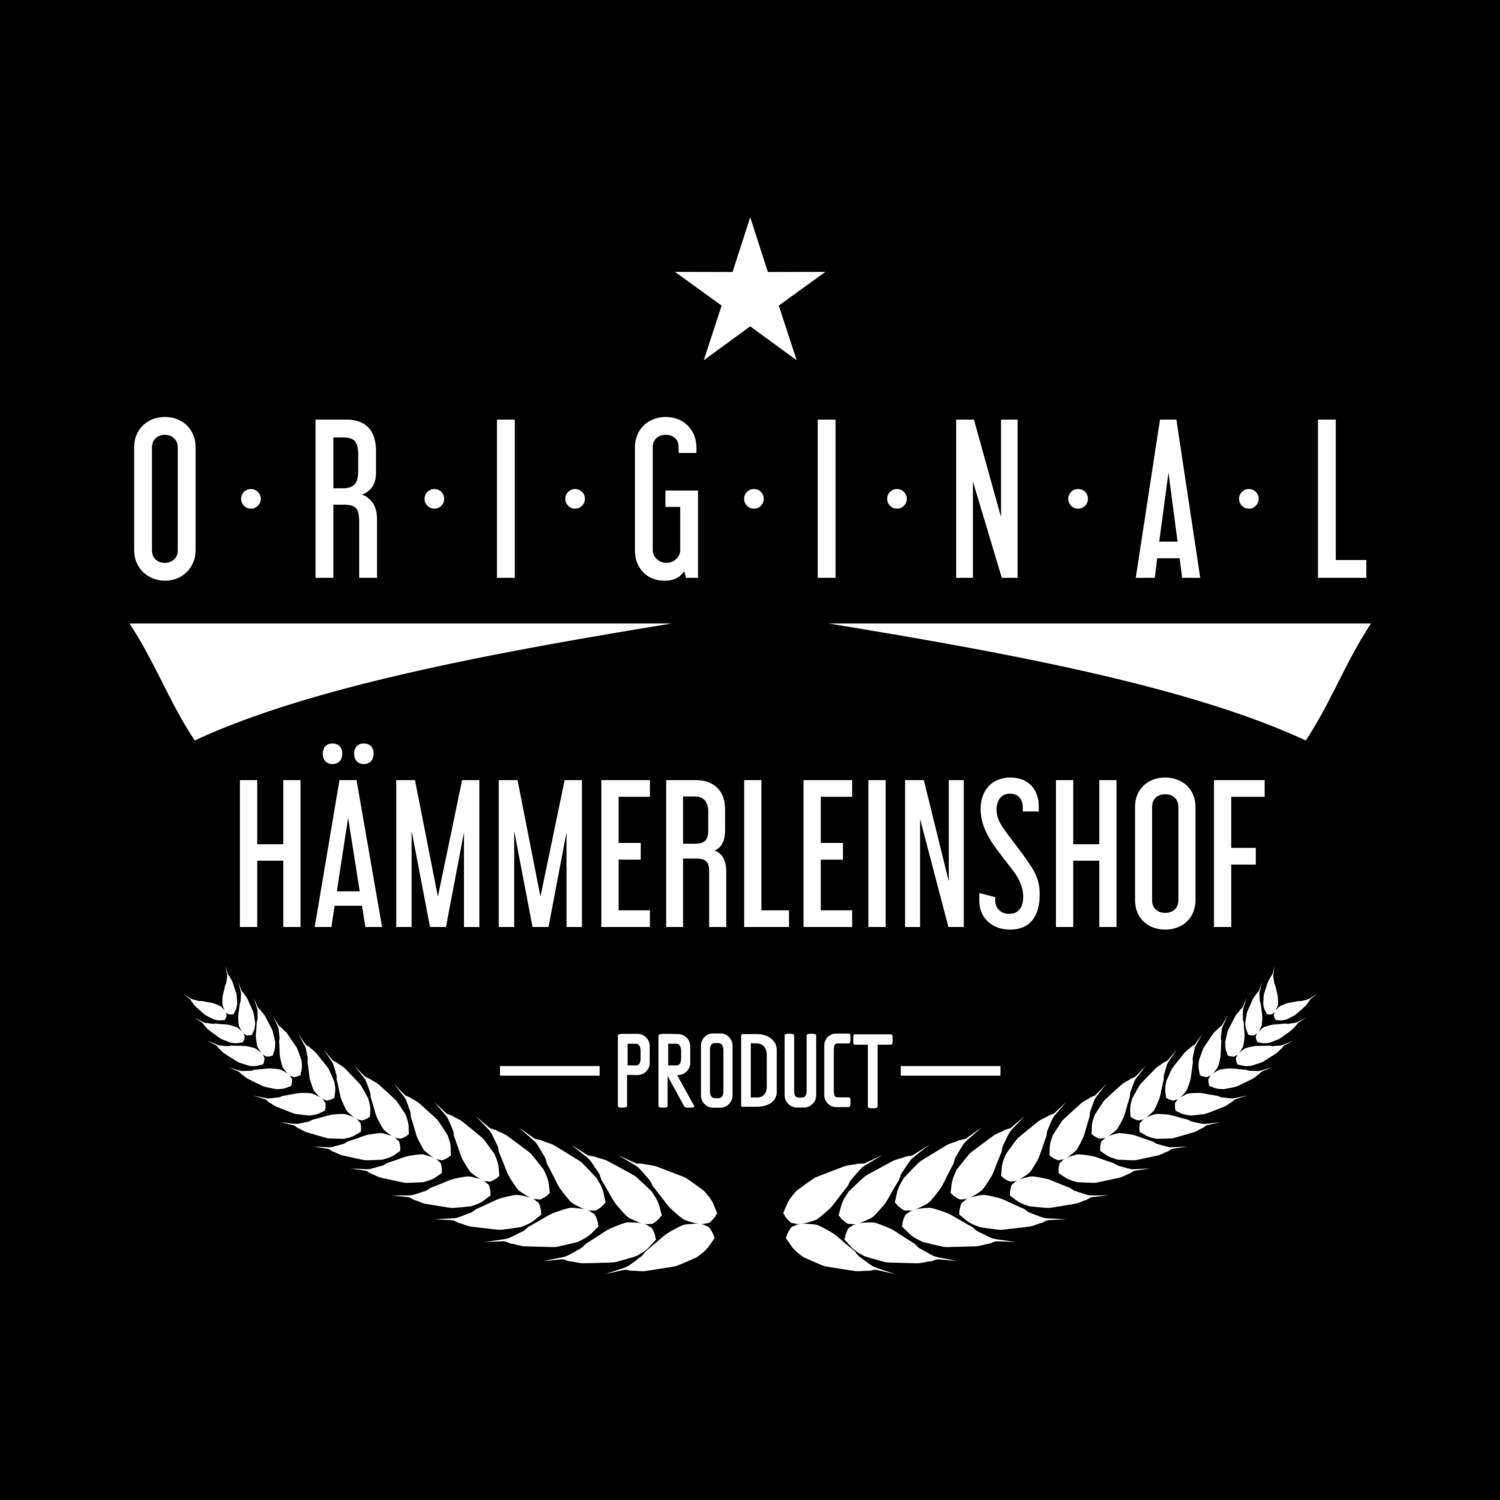 Hämmerleinshof T-Shirt »Original Product«